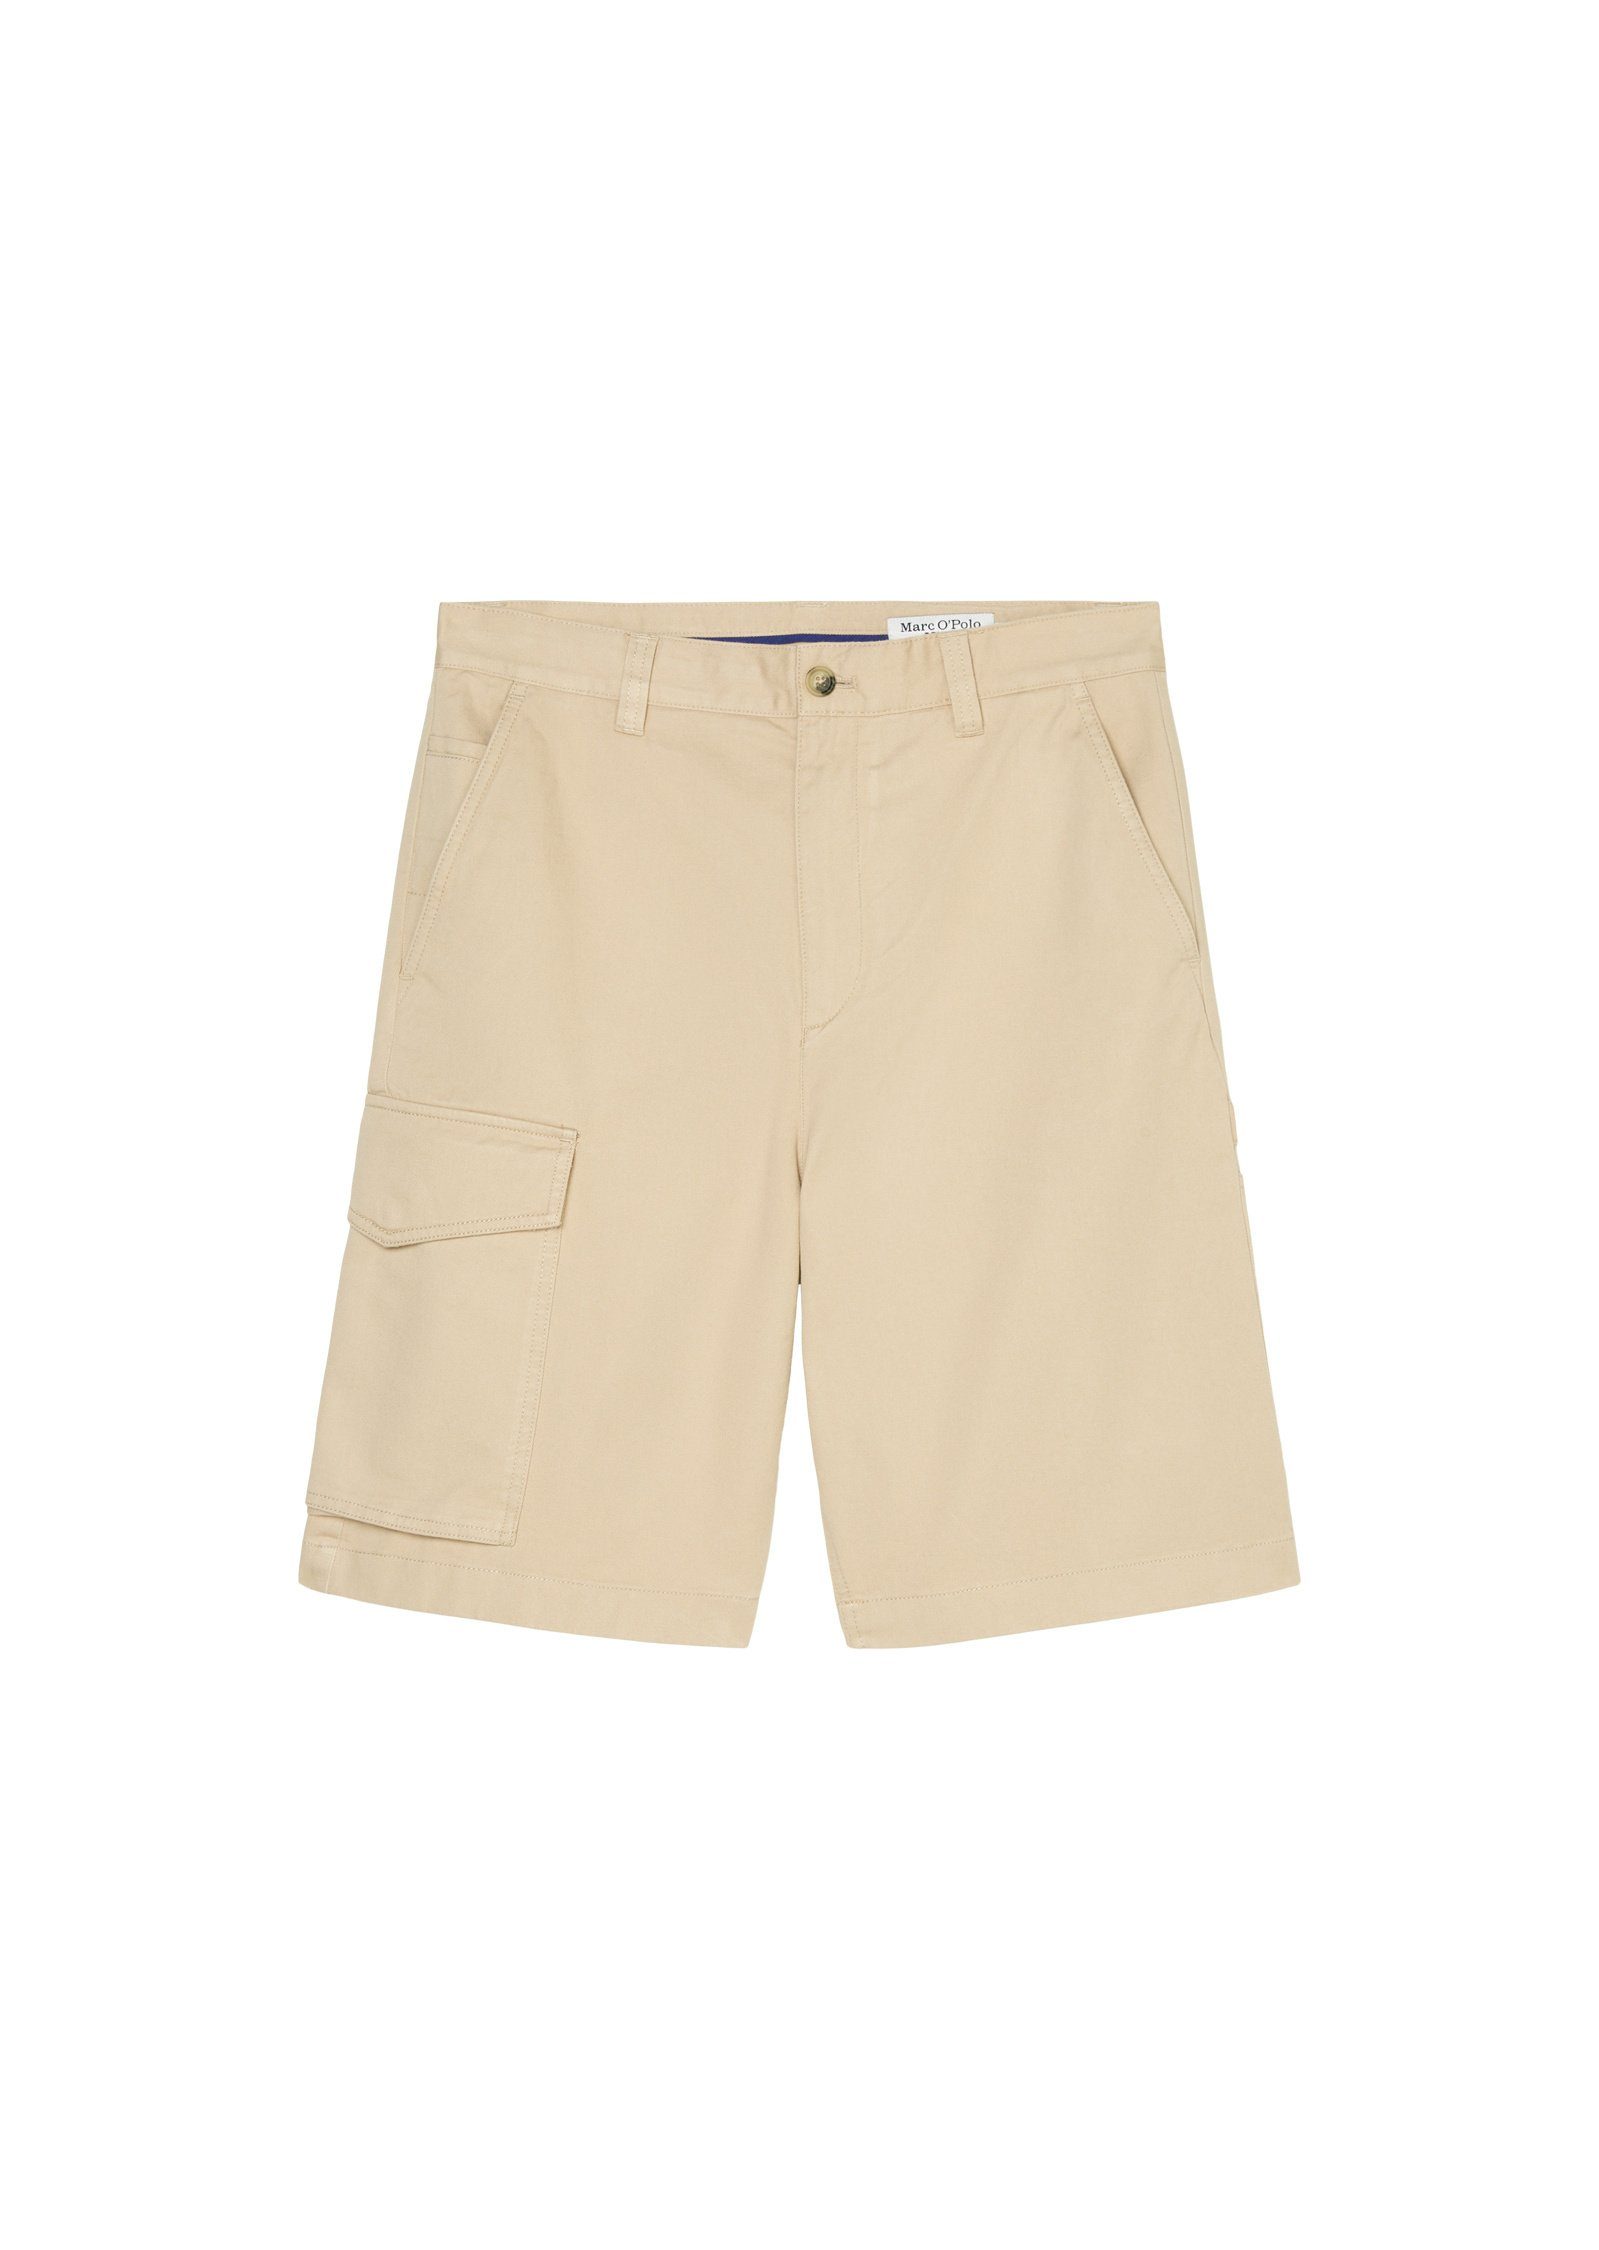 Marc O'Polo beige Shorts DENIM Workwear-Stil im